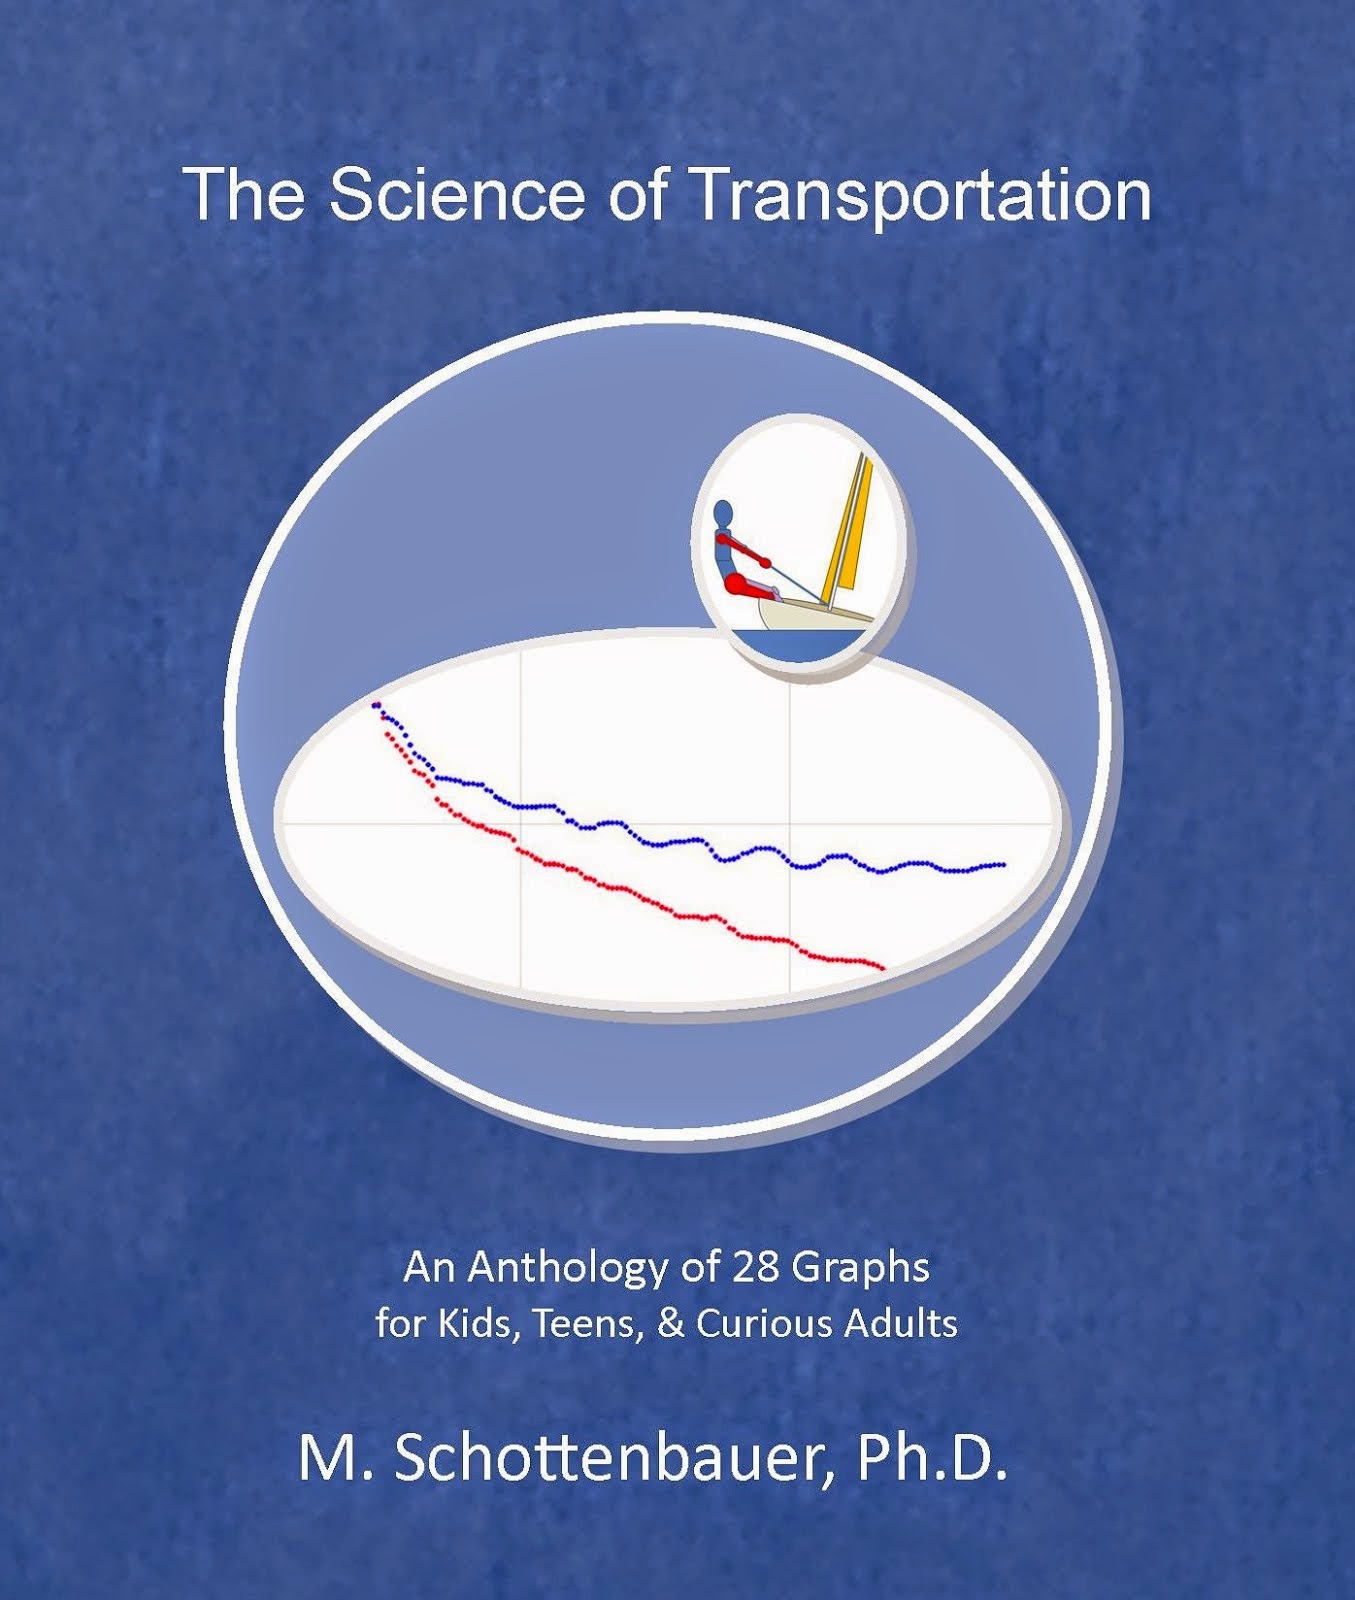 Science of Transportation